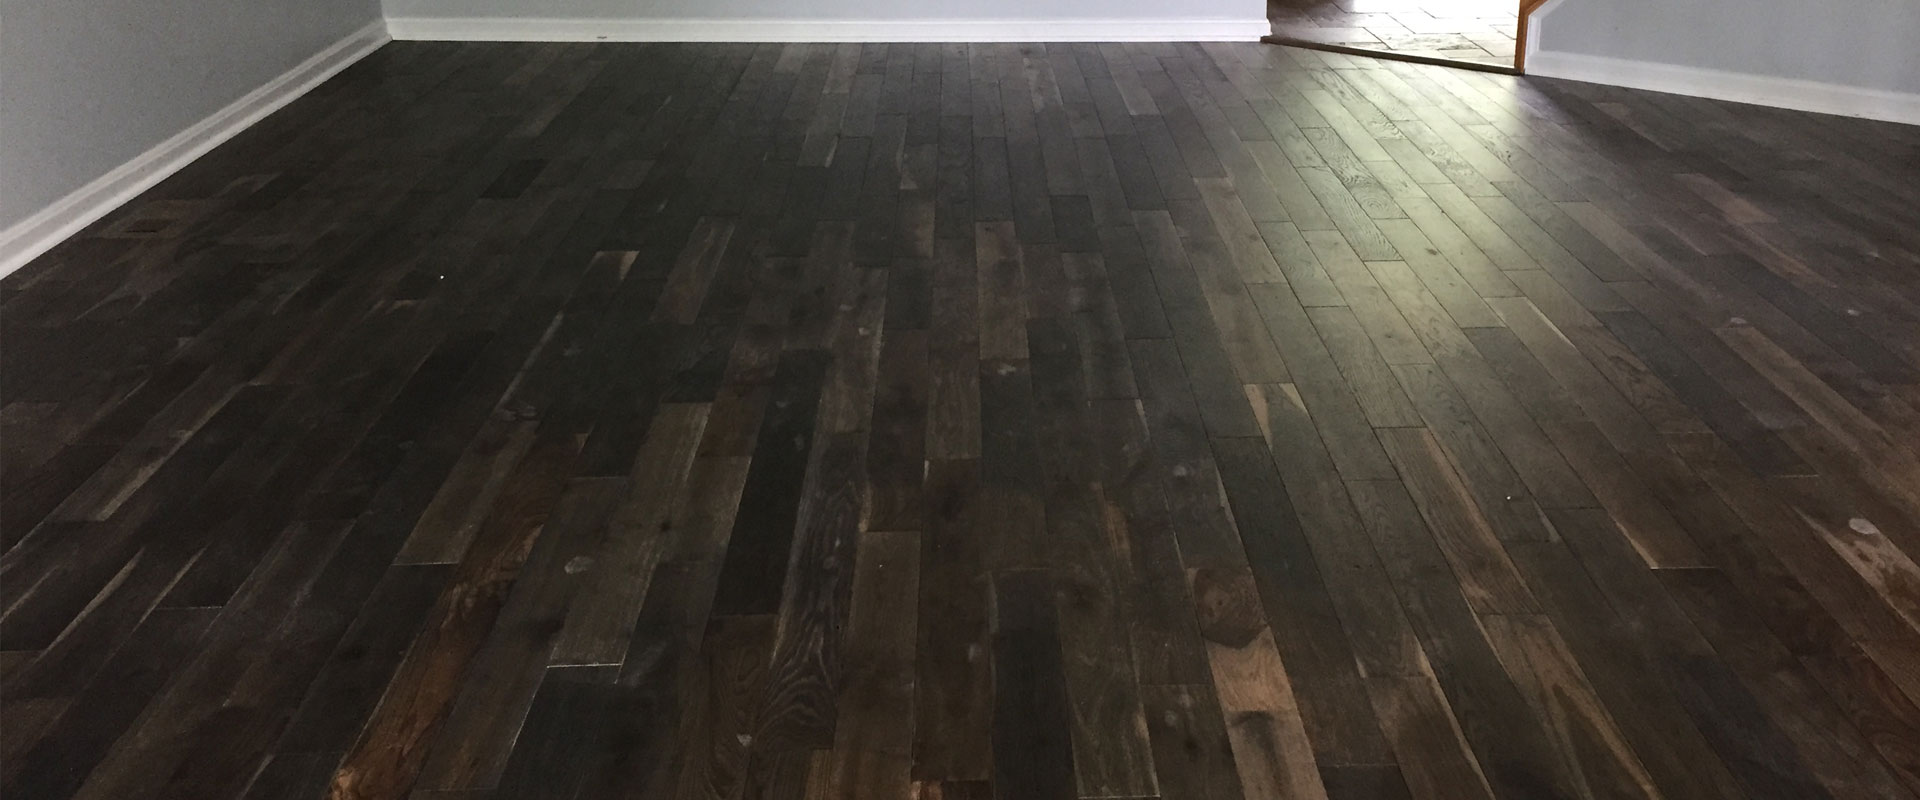 31 Minimalist Hardwood floors company arlington for Crypto Trade